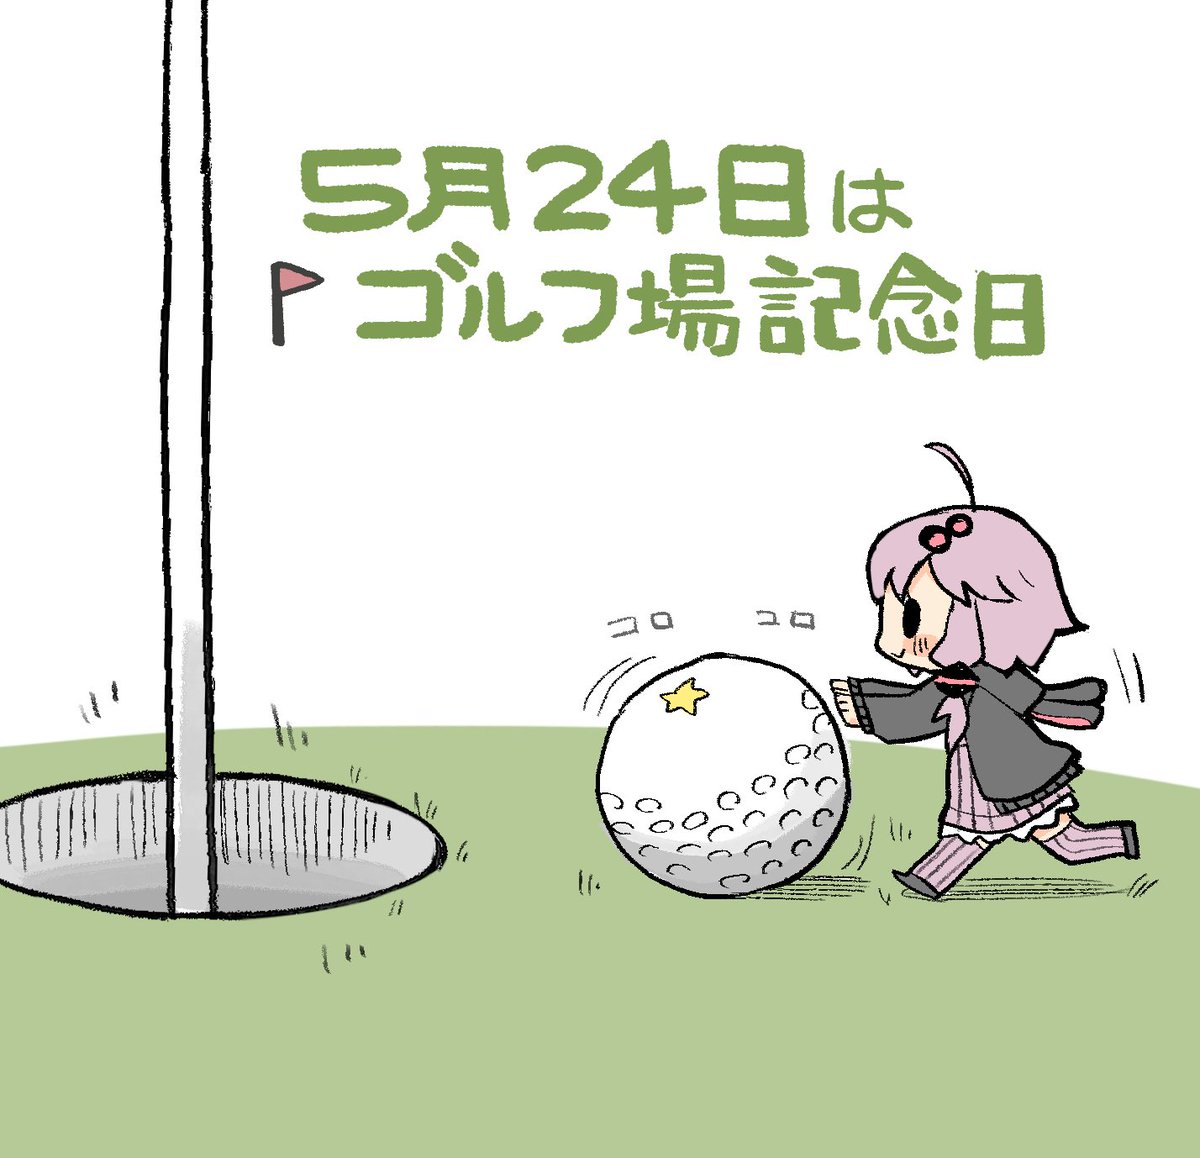 「5月24日はゴルフ場記念日」#ゆかりさん今日は何の日  #結月ゆかり
1903年の5月24日に日本で初めてゴルフ場が神戸に出来た事を記念した日。 